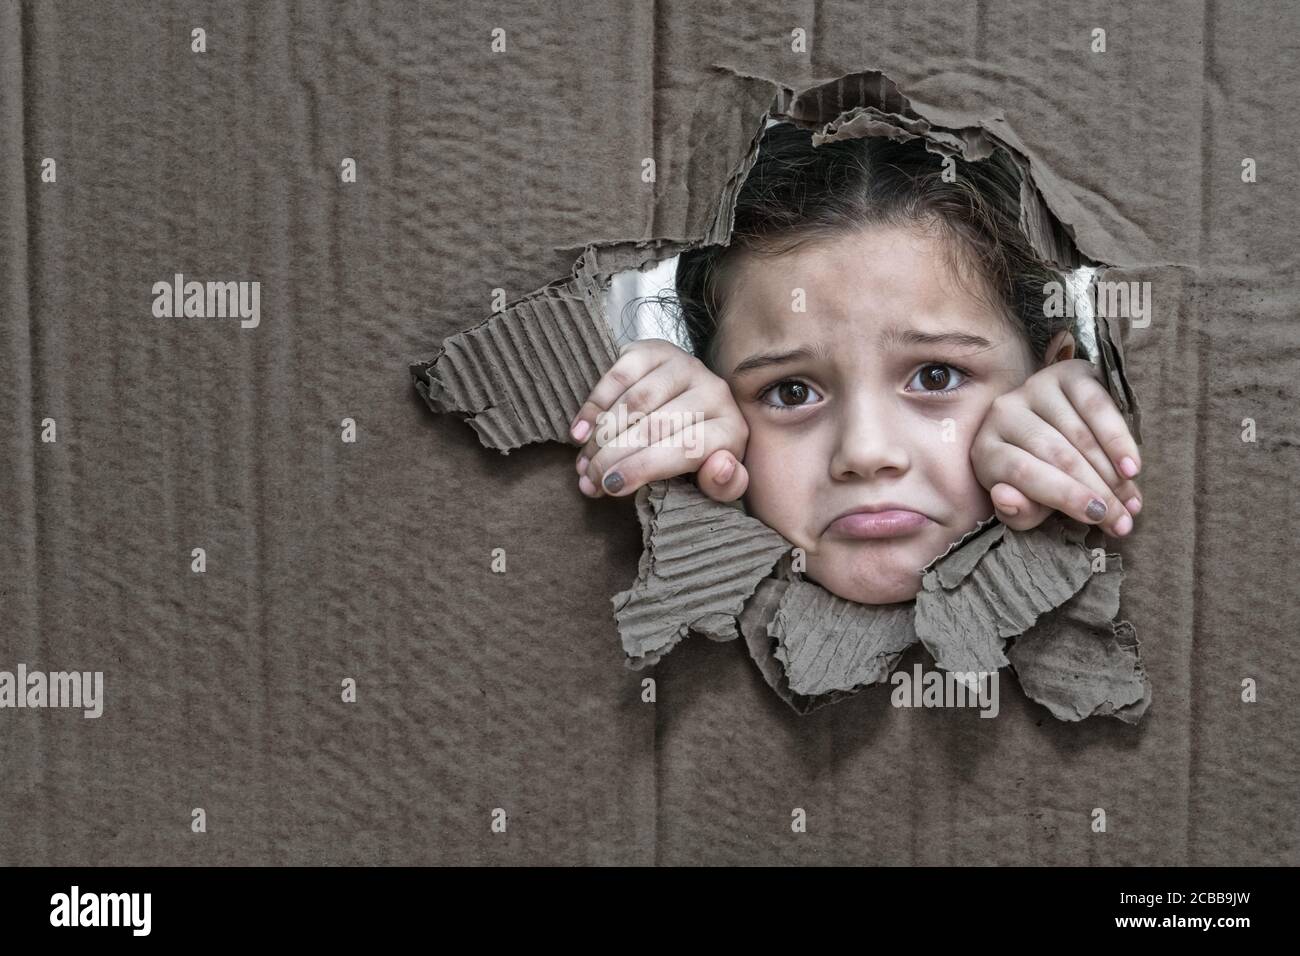 Bambina con un'espressione triste dietro un cartone, guardando attraverso un grande buco nel cartone con le sue mani che stringono il bordo del foro Foto Stock